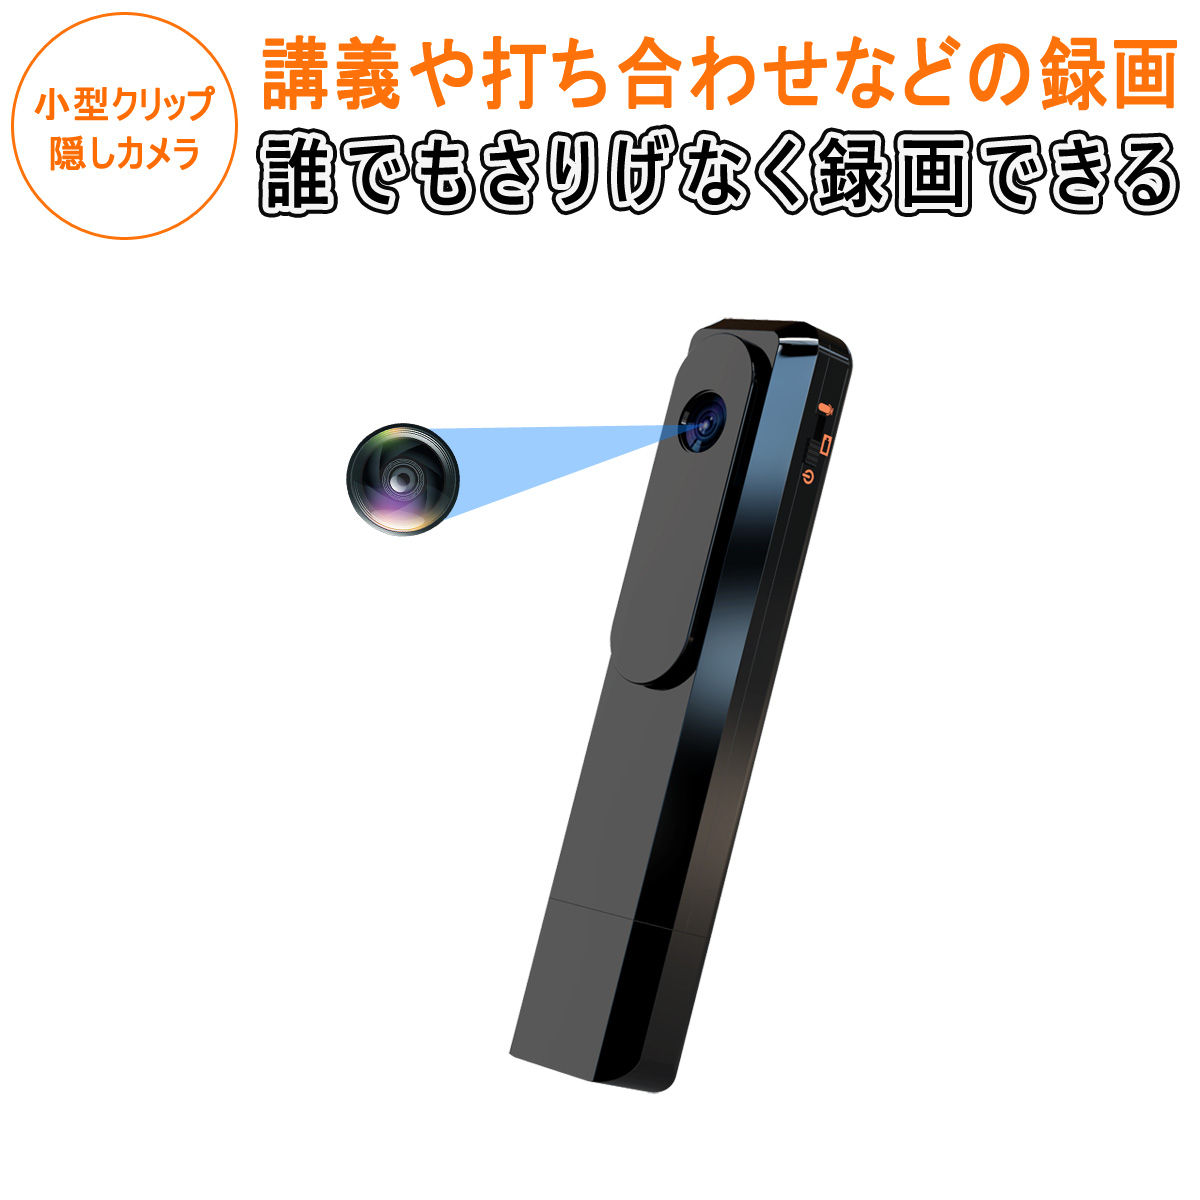 小型防犯カメラ 暗視 長時間連続録画 クリップ 防犯 再生 日本語取説 ボイスレコーダー ICレコーダー MicroSDカード録画 録音 コンパクト 録音機 簡単操作 1ヶ月保証